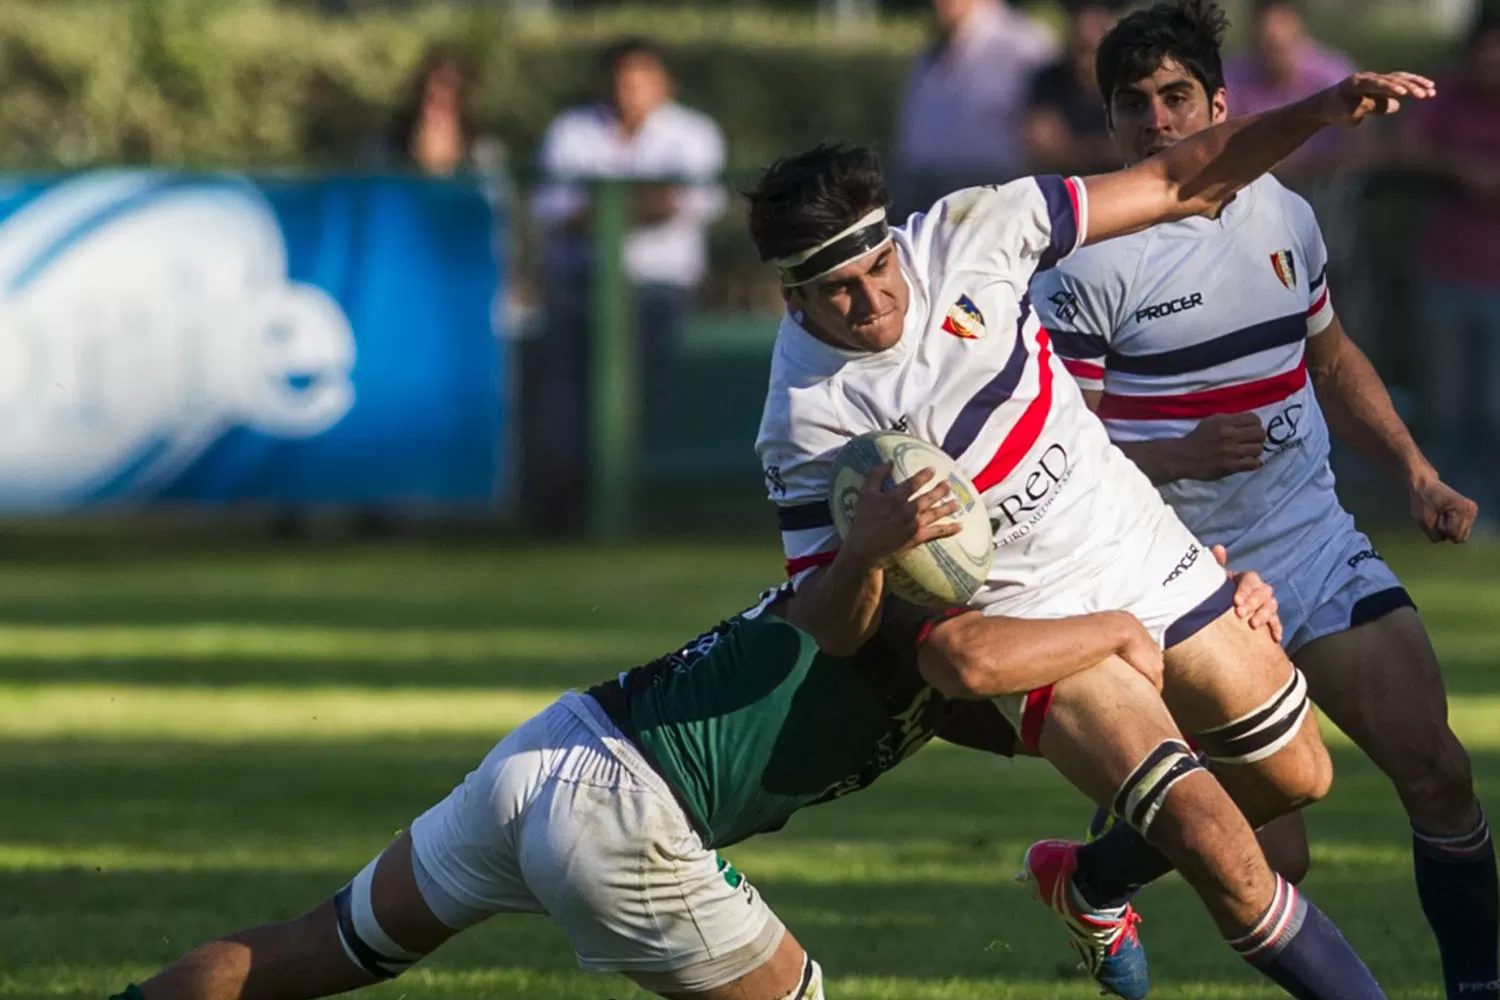 Natación se metió en la pelea por el titulo tras derrotar a Tucumán Rugby.
ARCHIVO